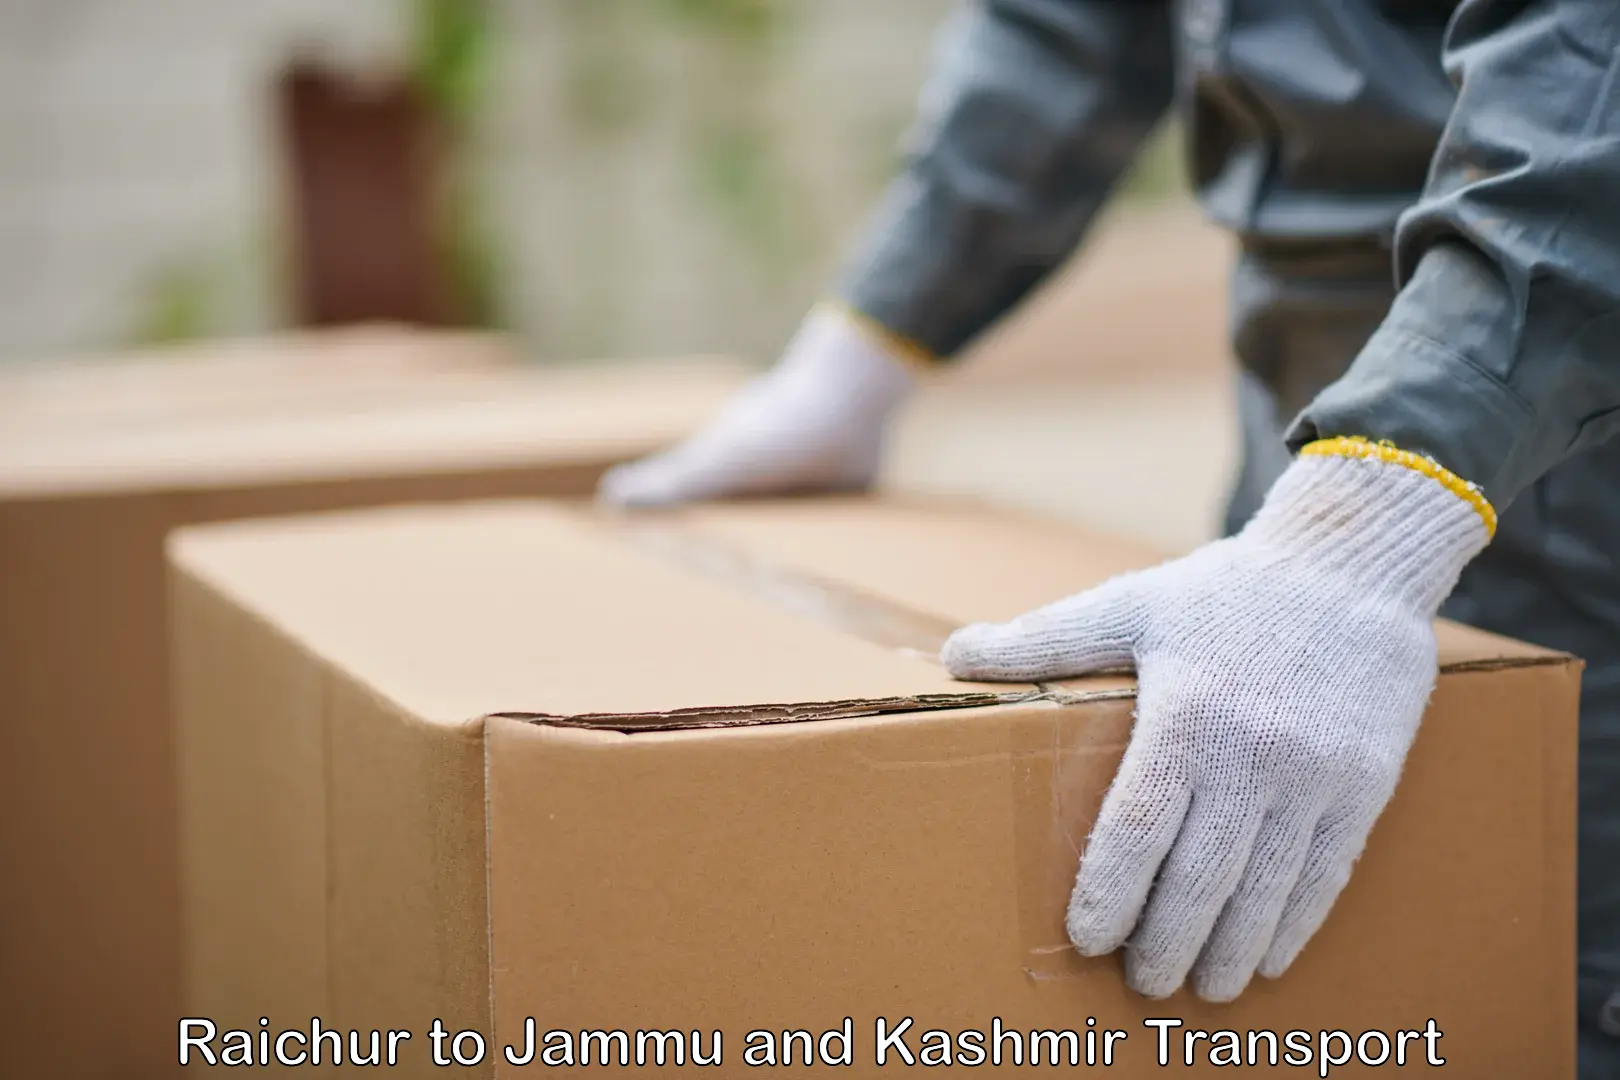 Air cargo transport services Raichur to Srinagar Kashmir